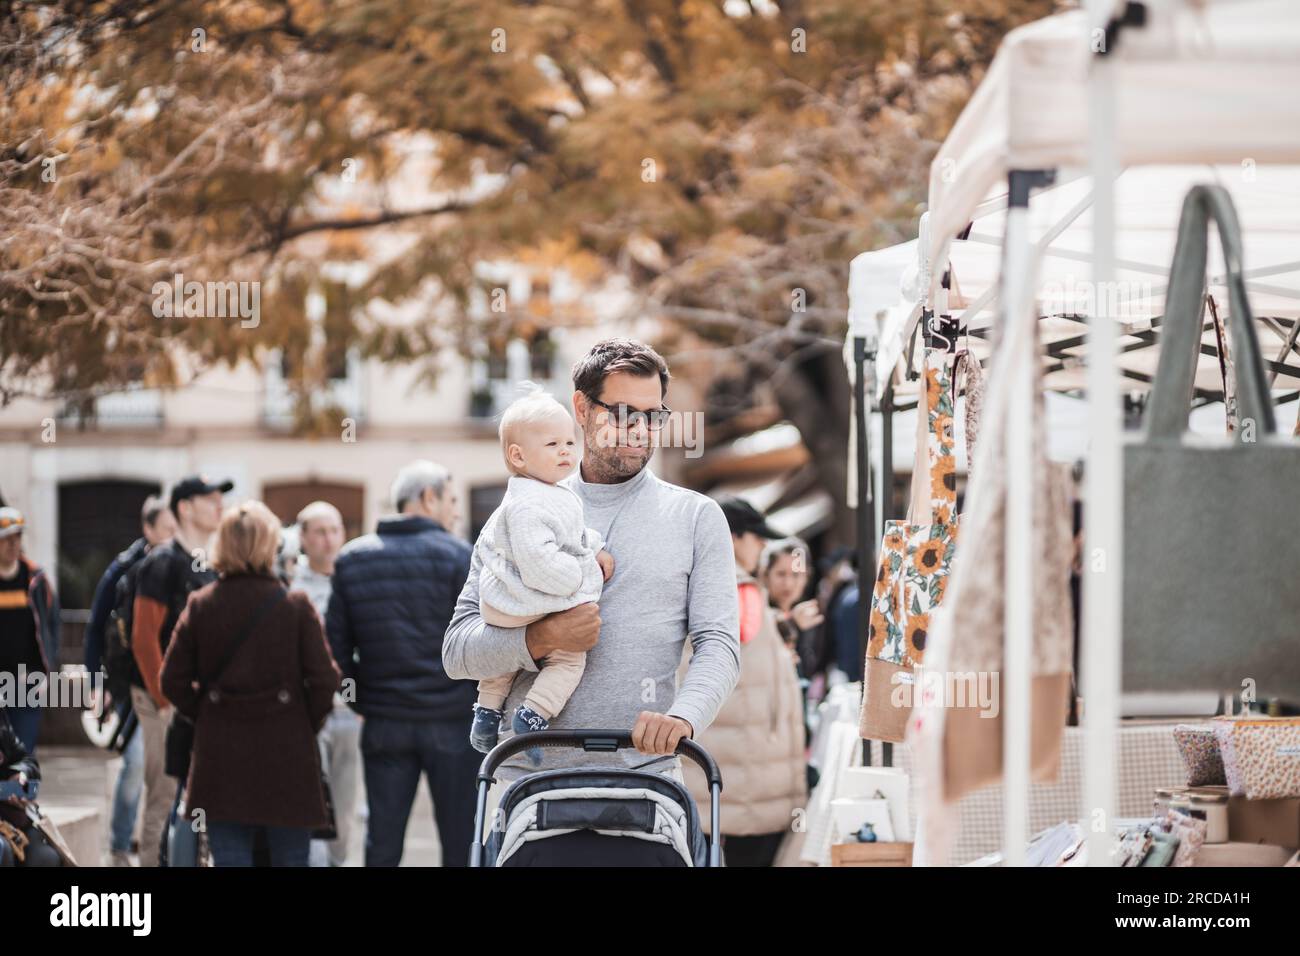 Padre caminando llevando a su bebé niño y empujando el cochecito en la multitud de personas que vigila el mercado de pulgas del domingo en Málaga, España Foto de stock